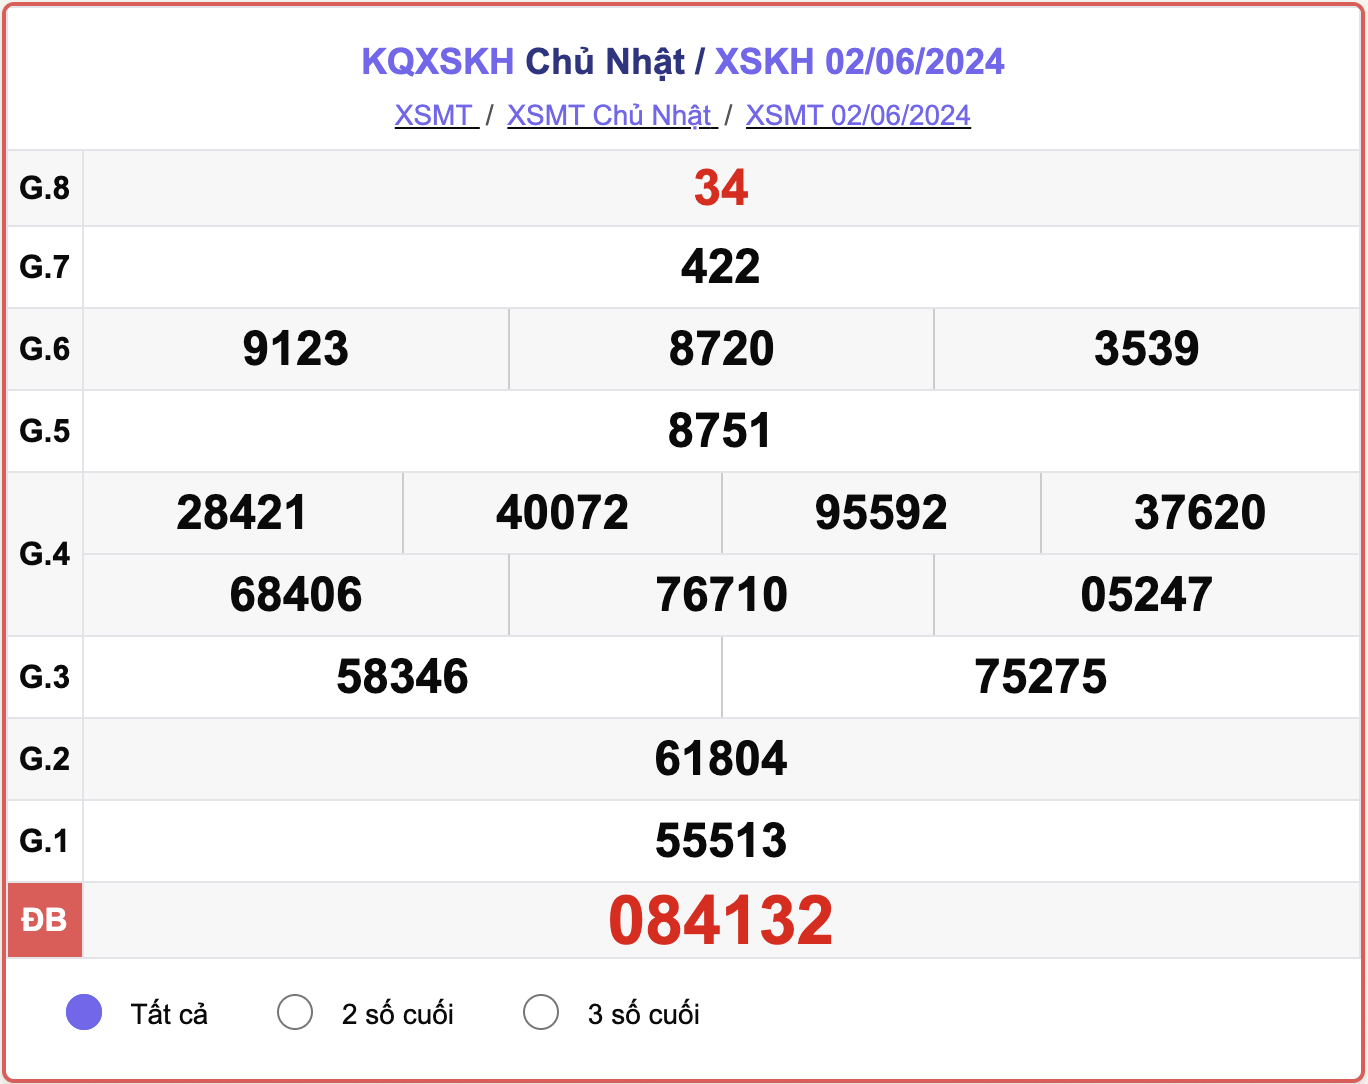 XSKH 2/6, kết quả xổ số Khánh Hòa hôm nay 2/6/2024.